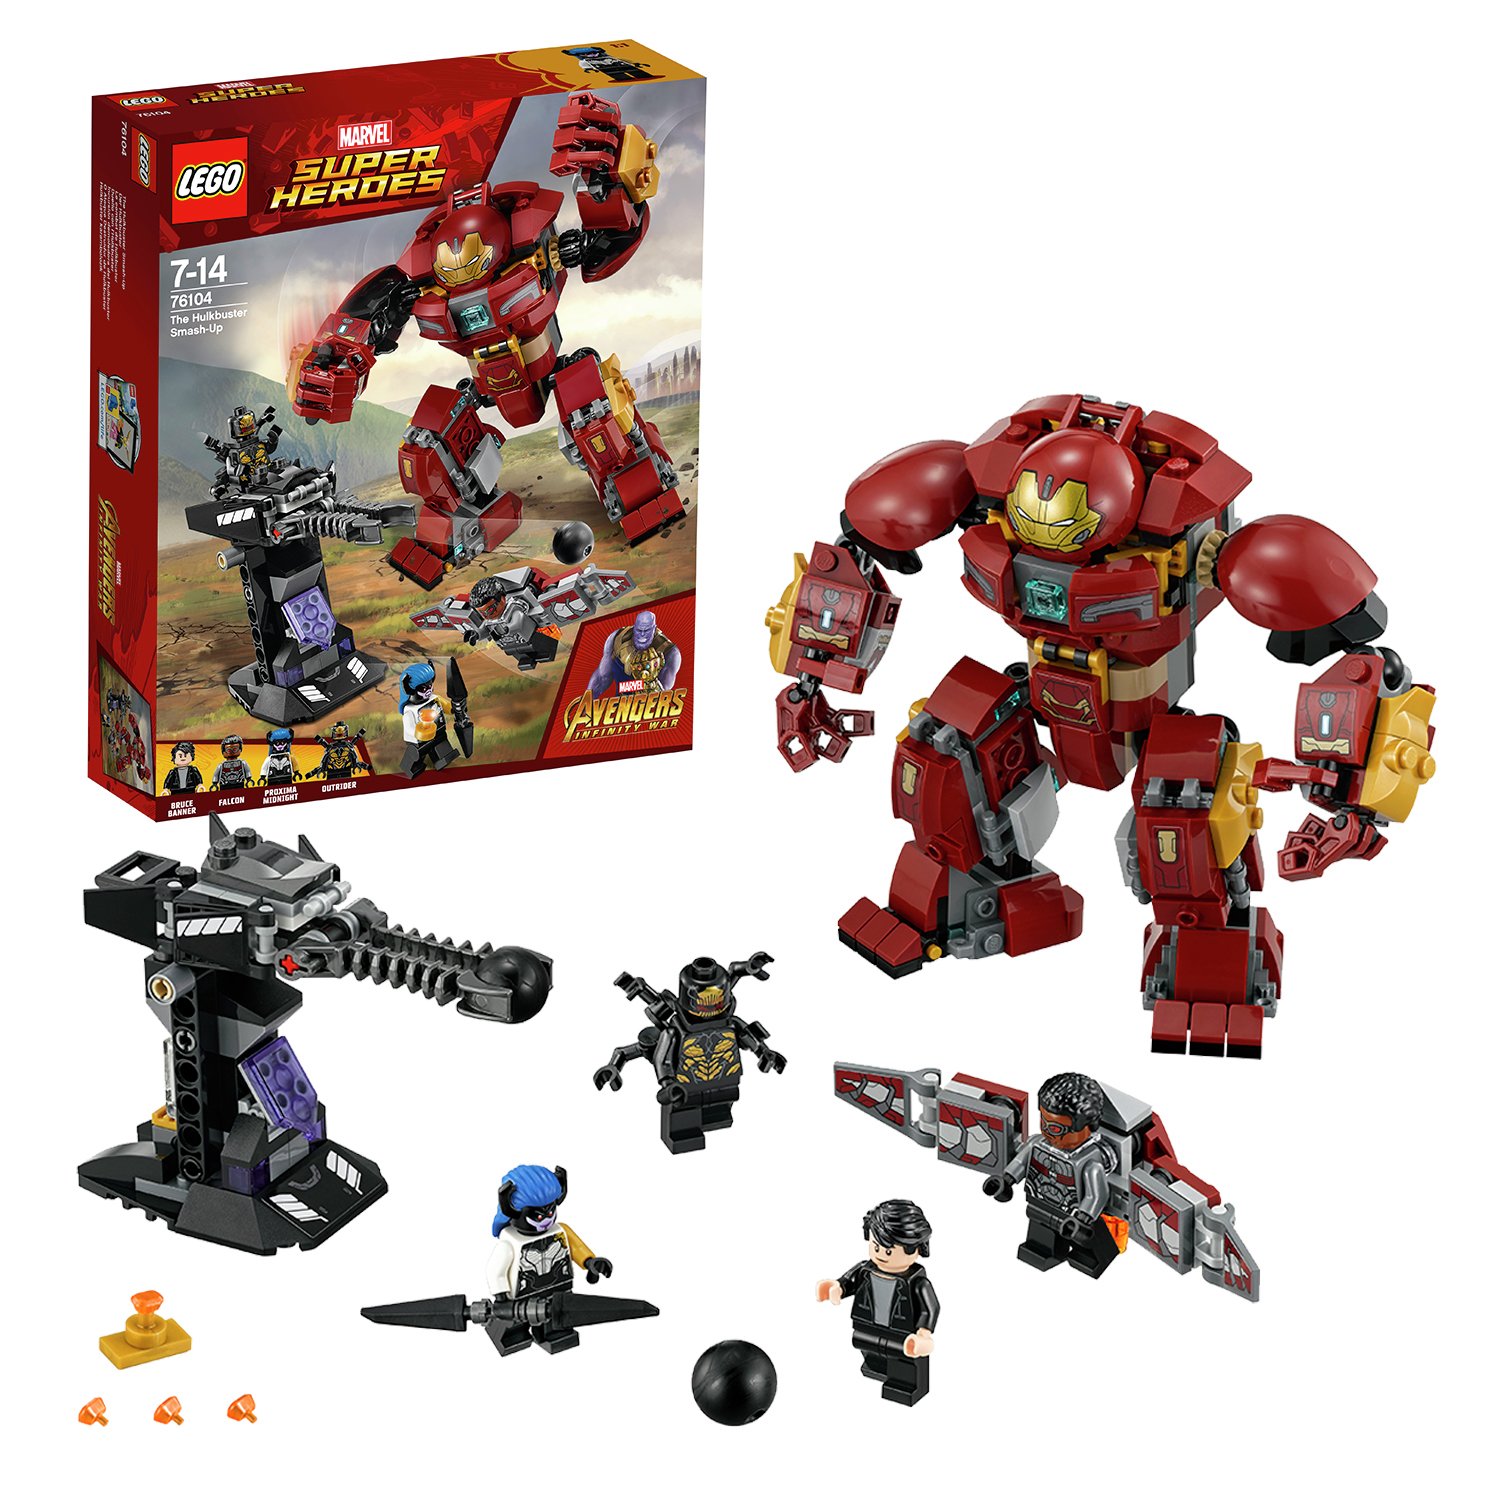 LEGO Marvel Avengers Hulkbuster Smashup Toy - 76104